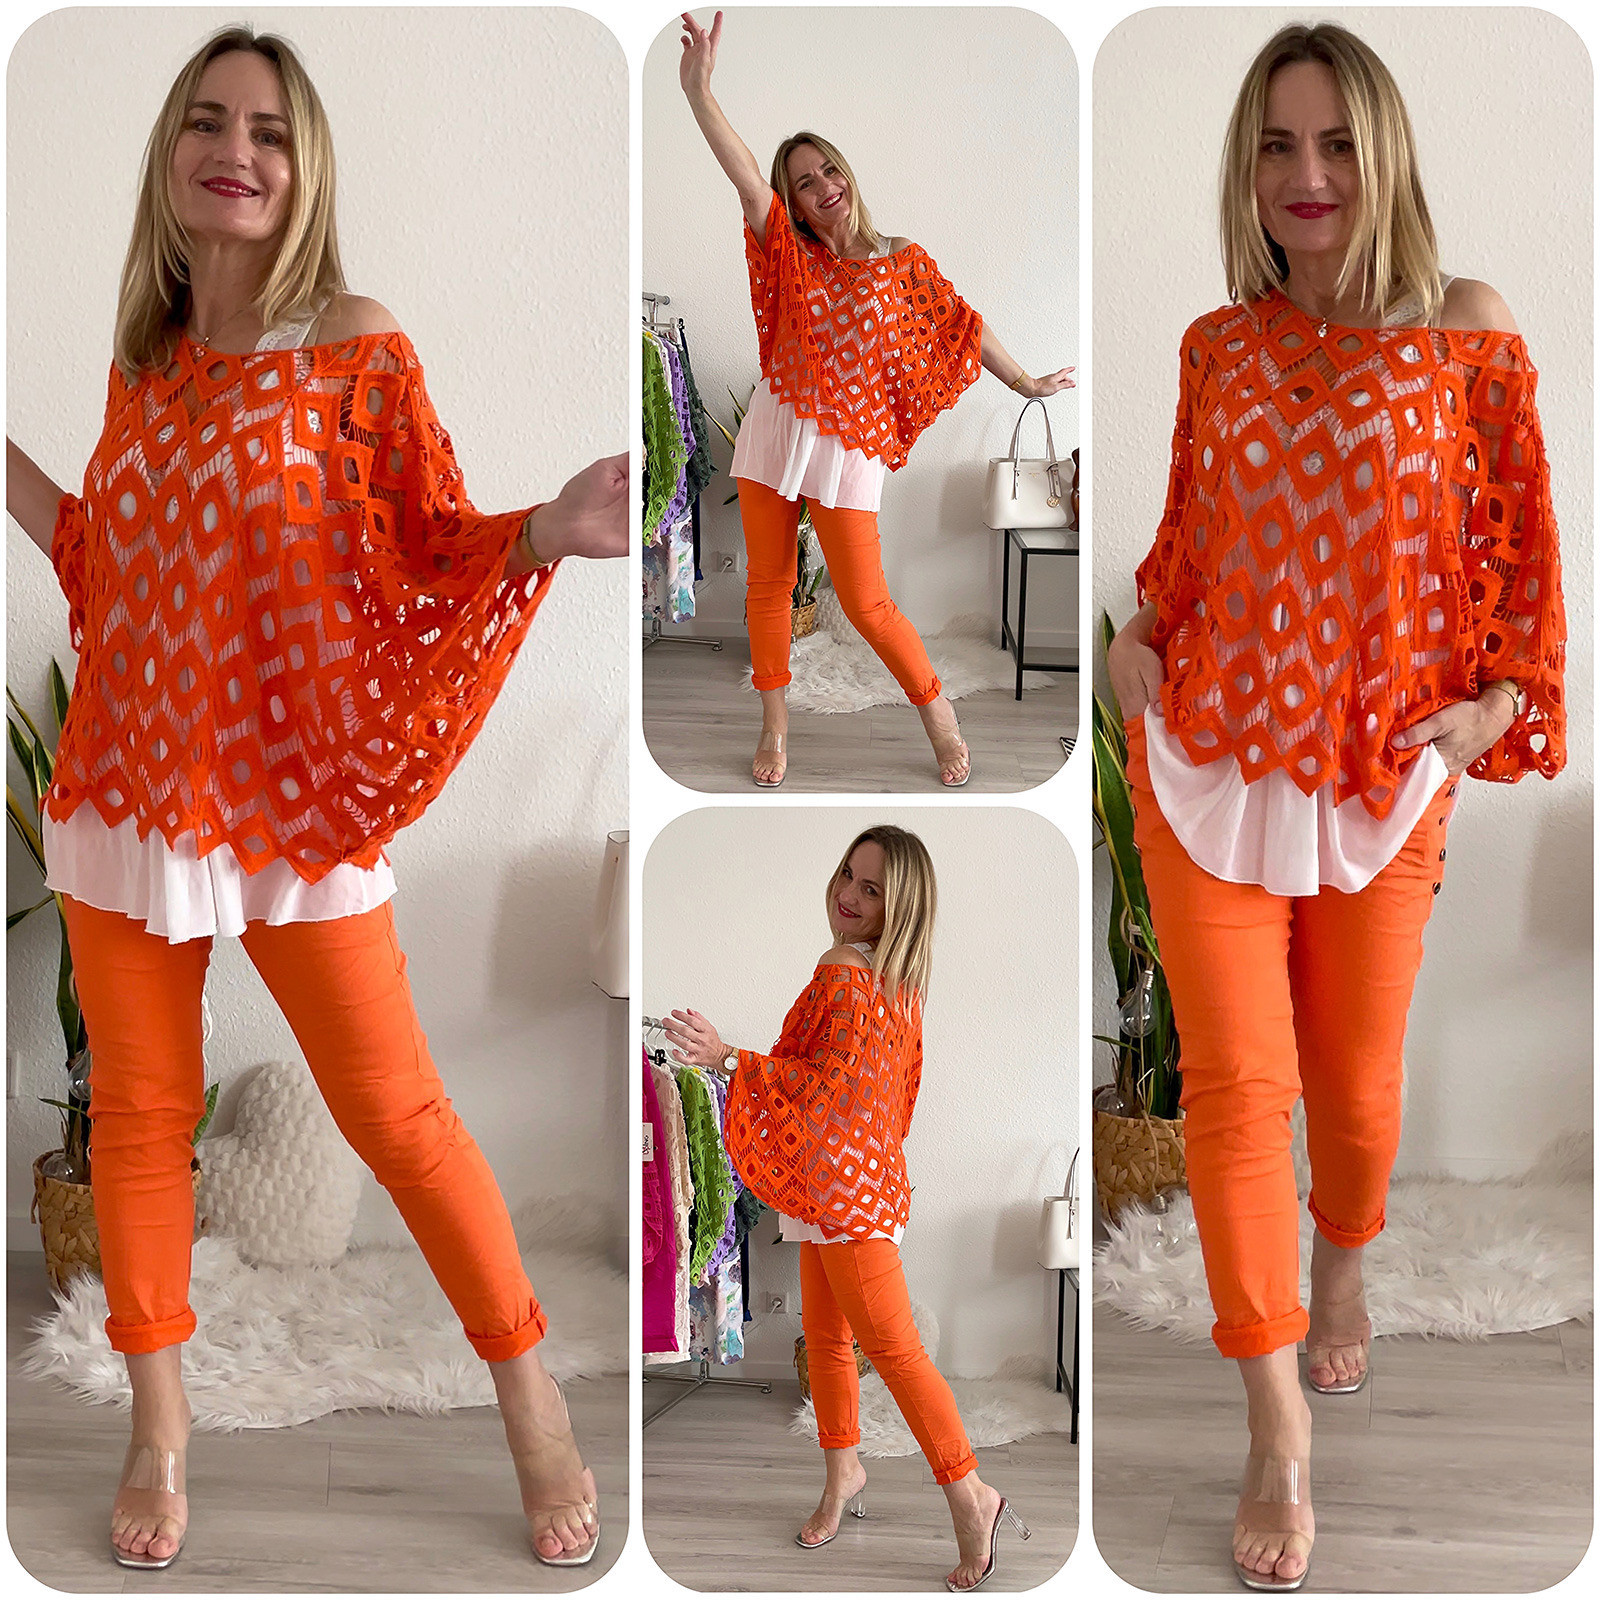 Damen Häkel Tunika Netz Top Hängerchenbeige oversize 36 bis 44/46 orange